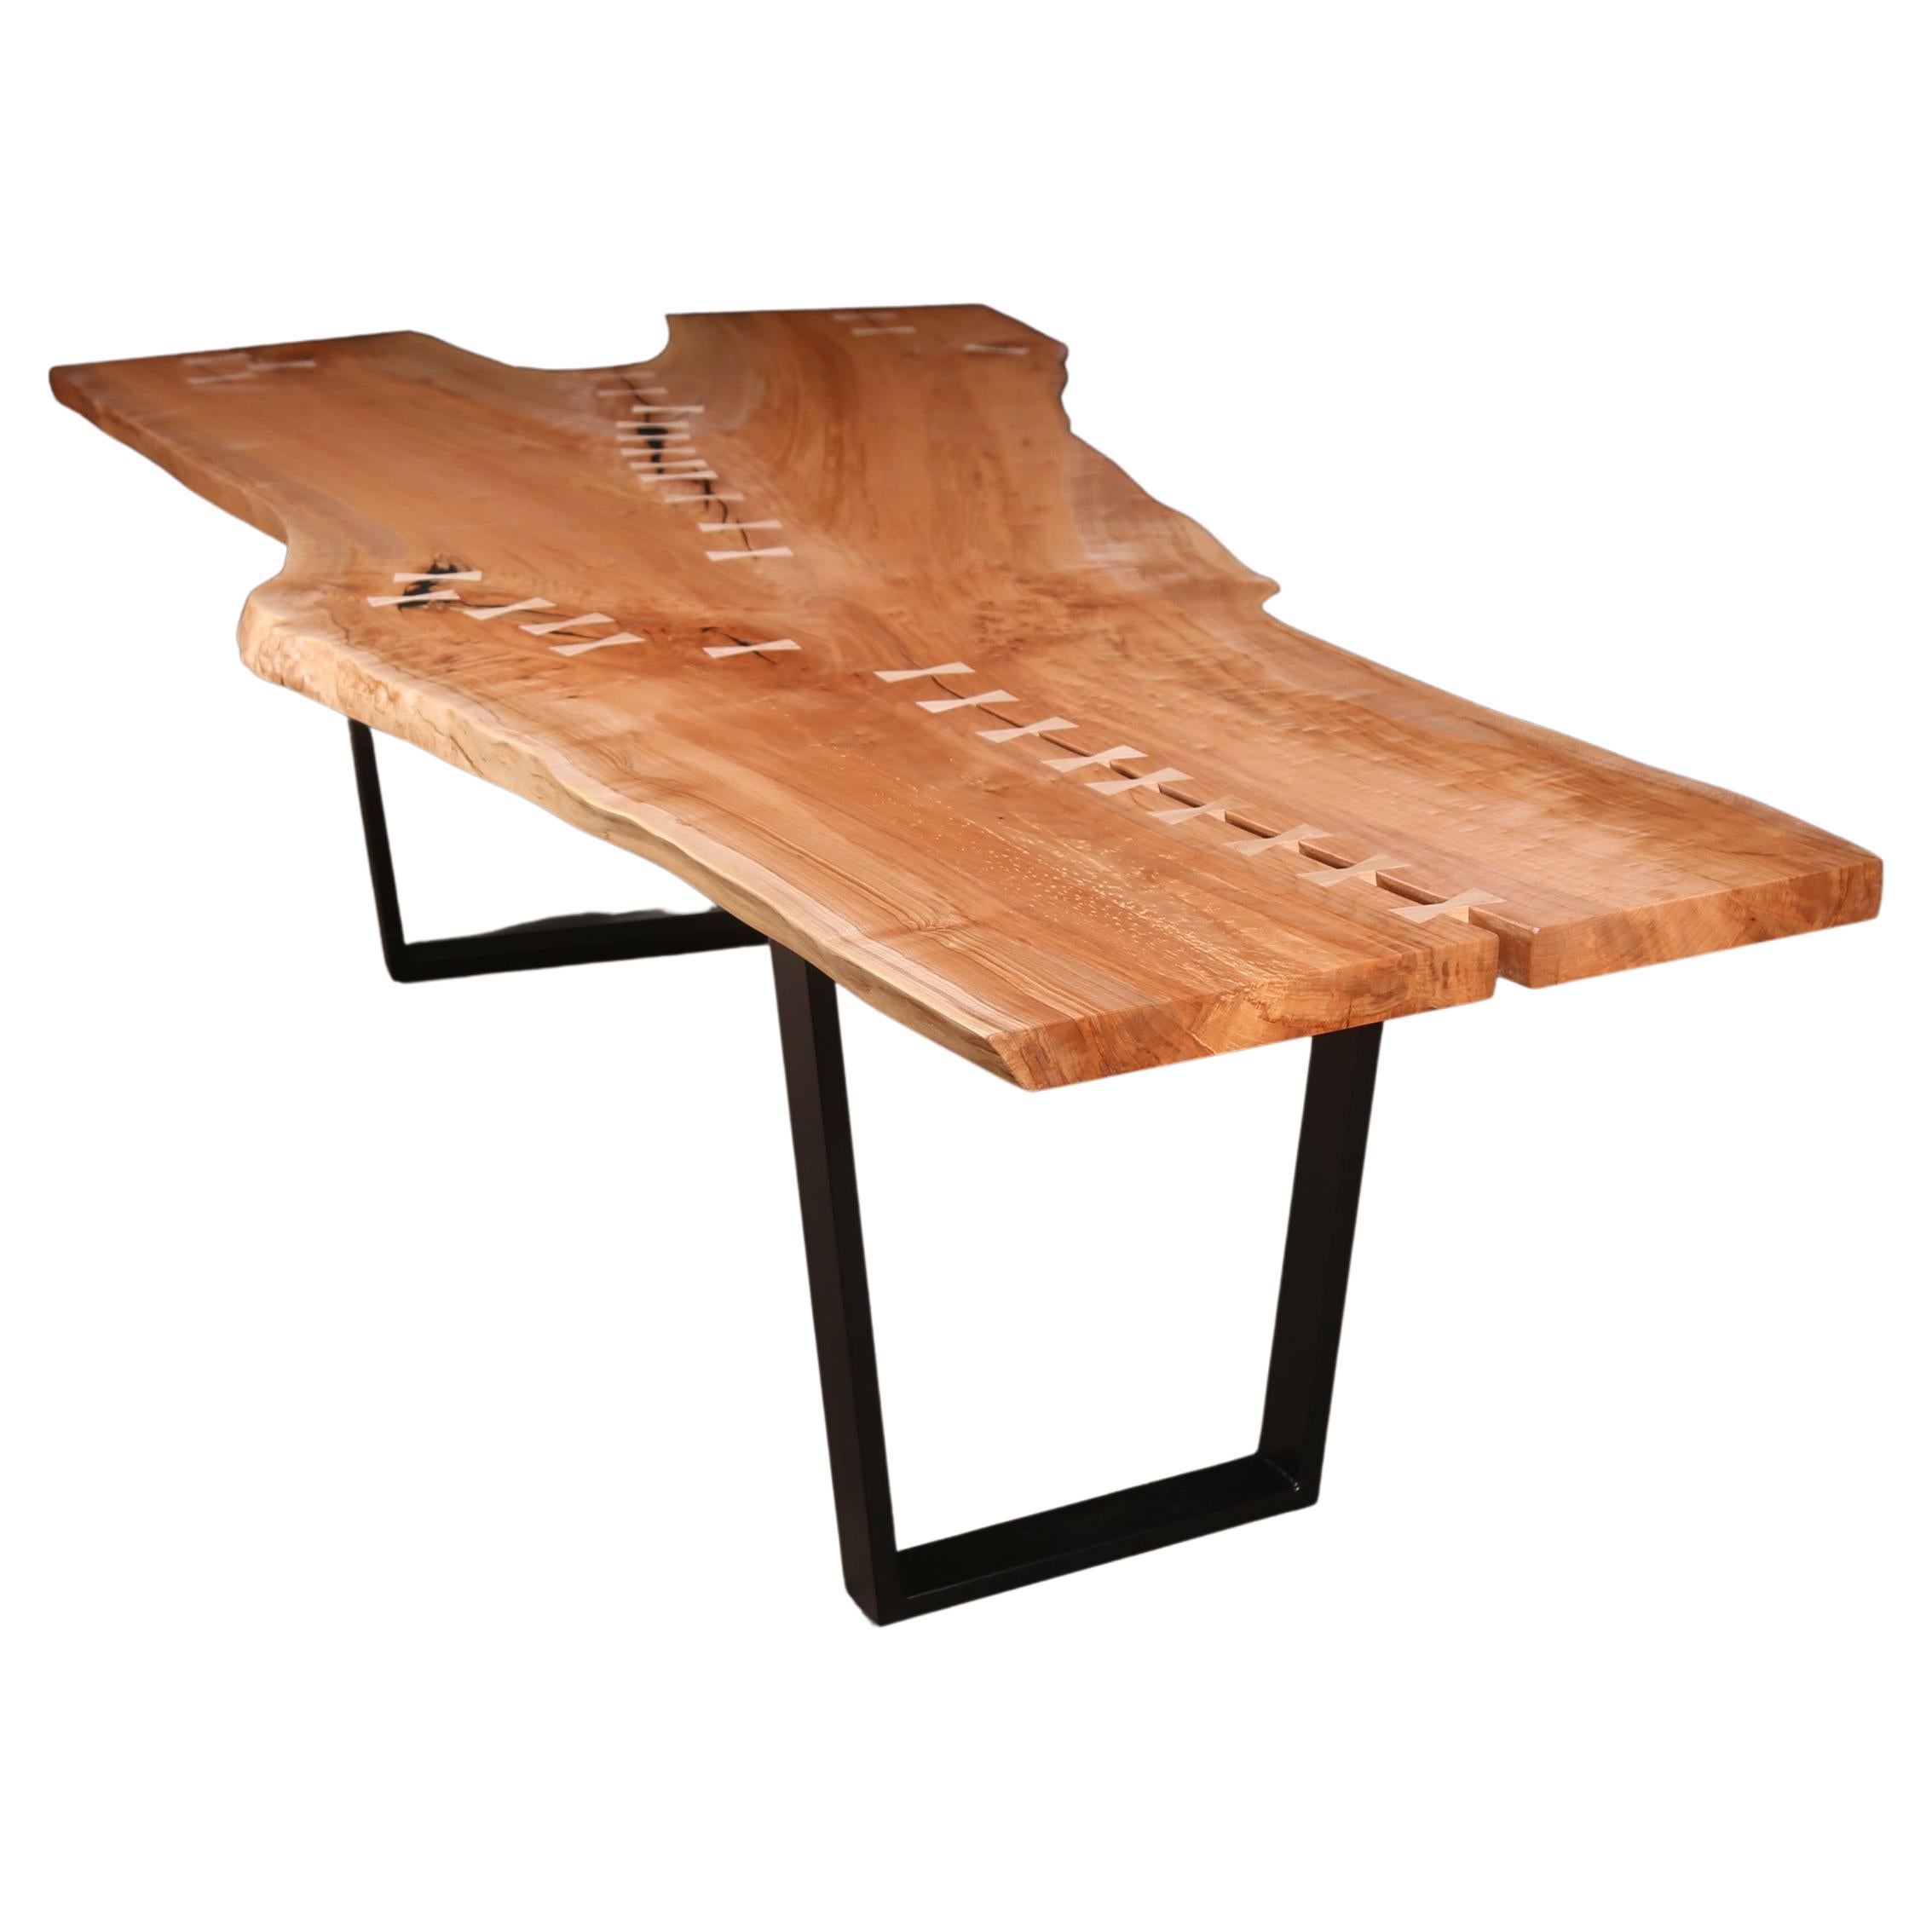 Table en érable à bord vif sur mesure, une seule dalle avec incrustation de nœud papillon, base métallique